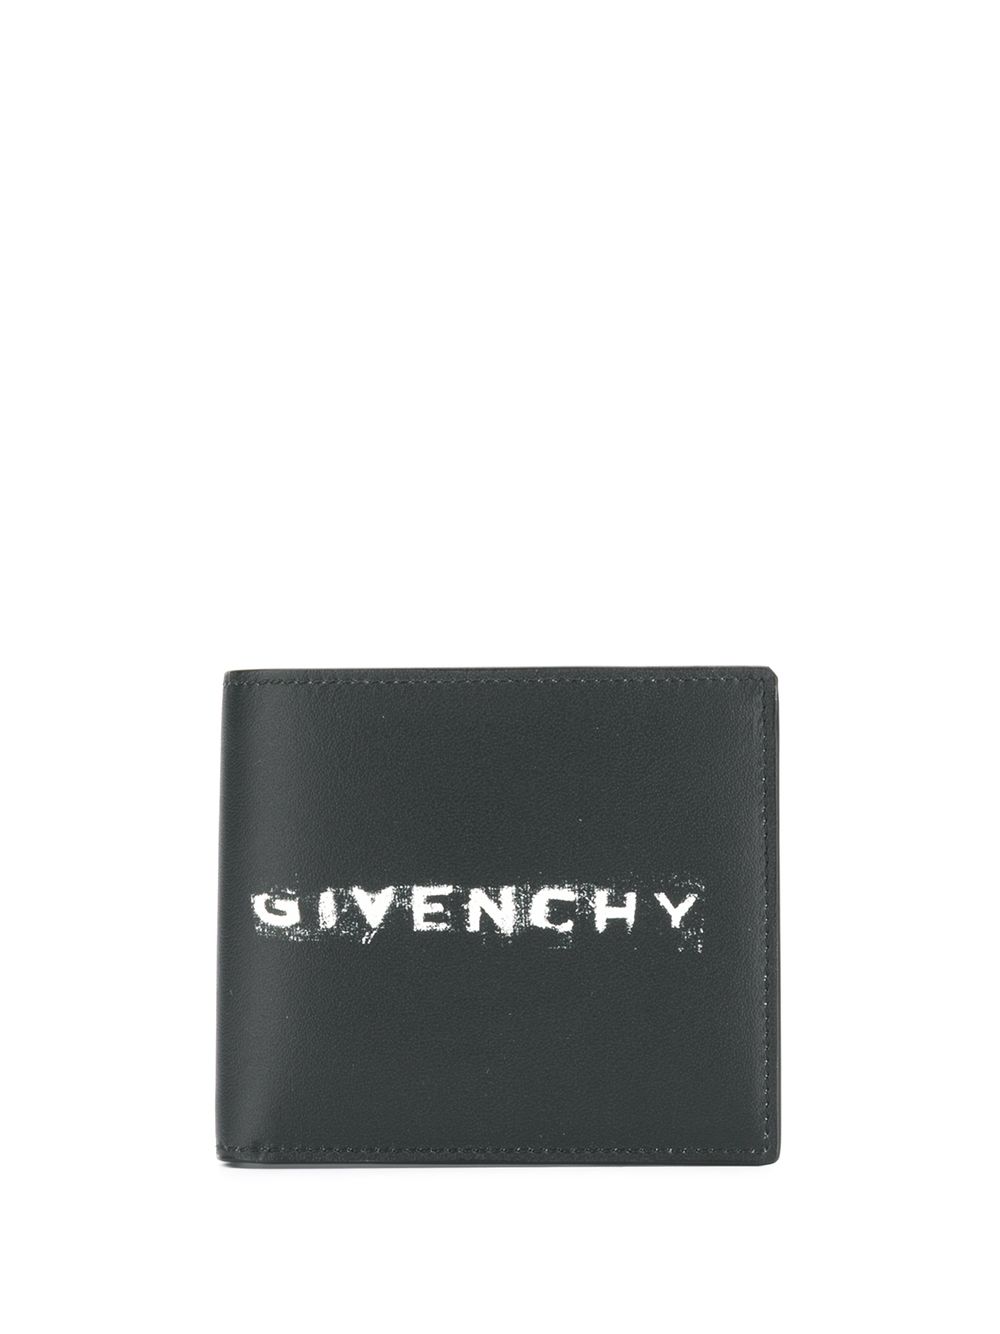 фото Givenchy кошелек с принтом логотипа